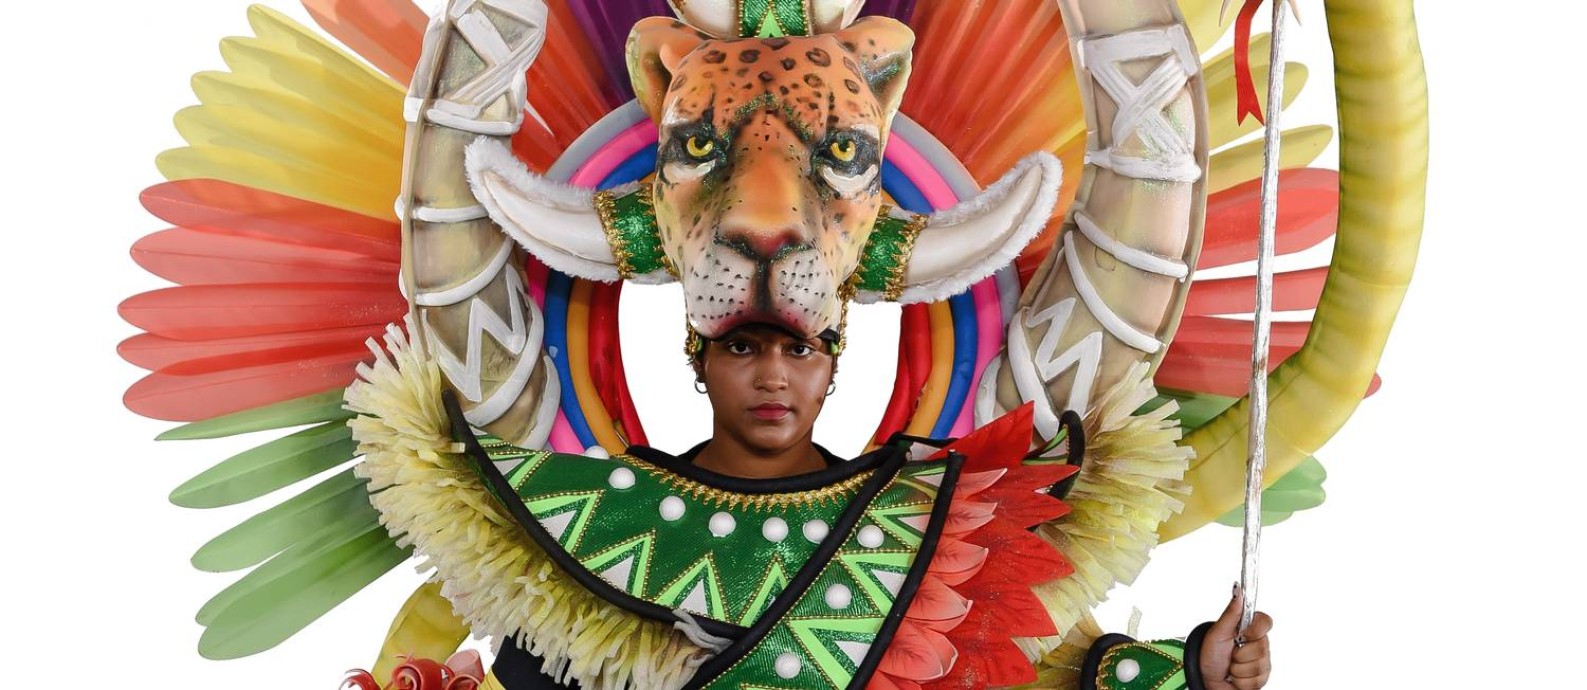 Detalhe da Ala Ciclo da Vida, do carnavalesco Edson Pereira, da Unidos de Padre Miguel Foto: Divulgação/Diego Mendes